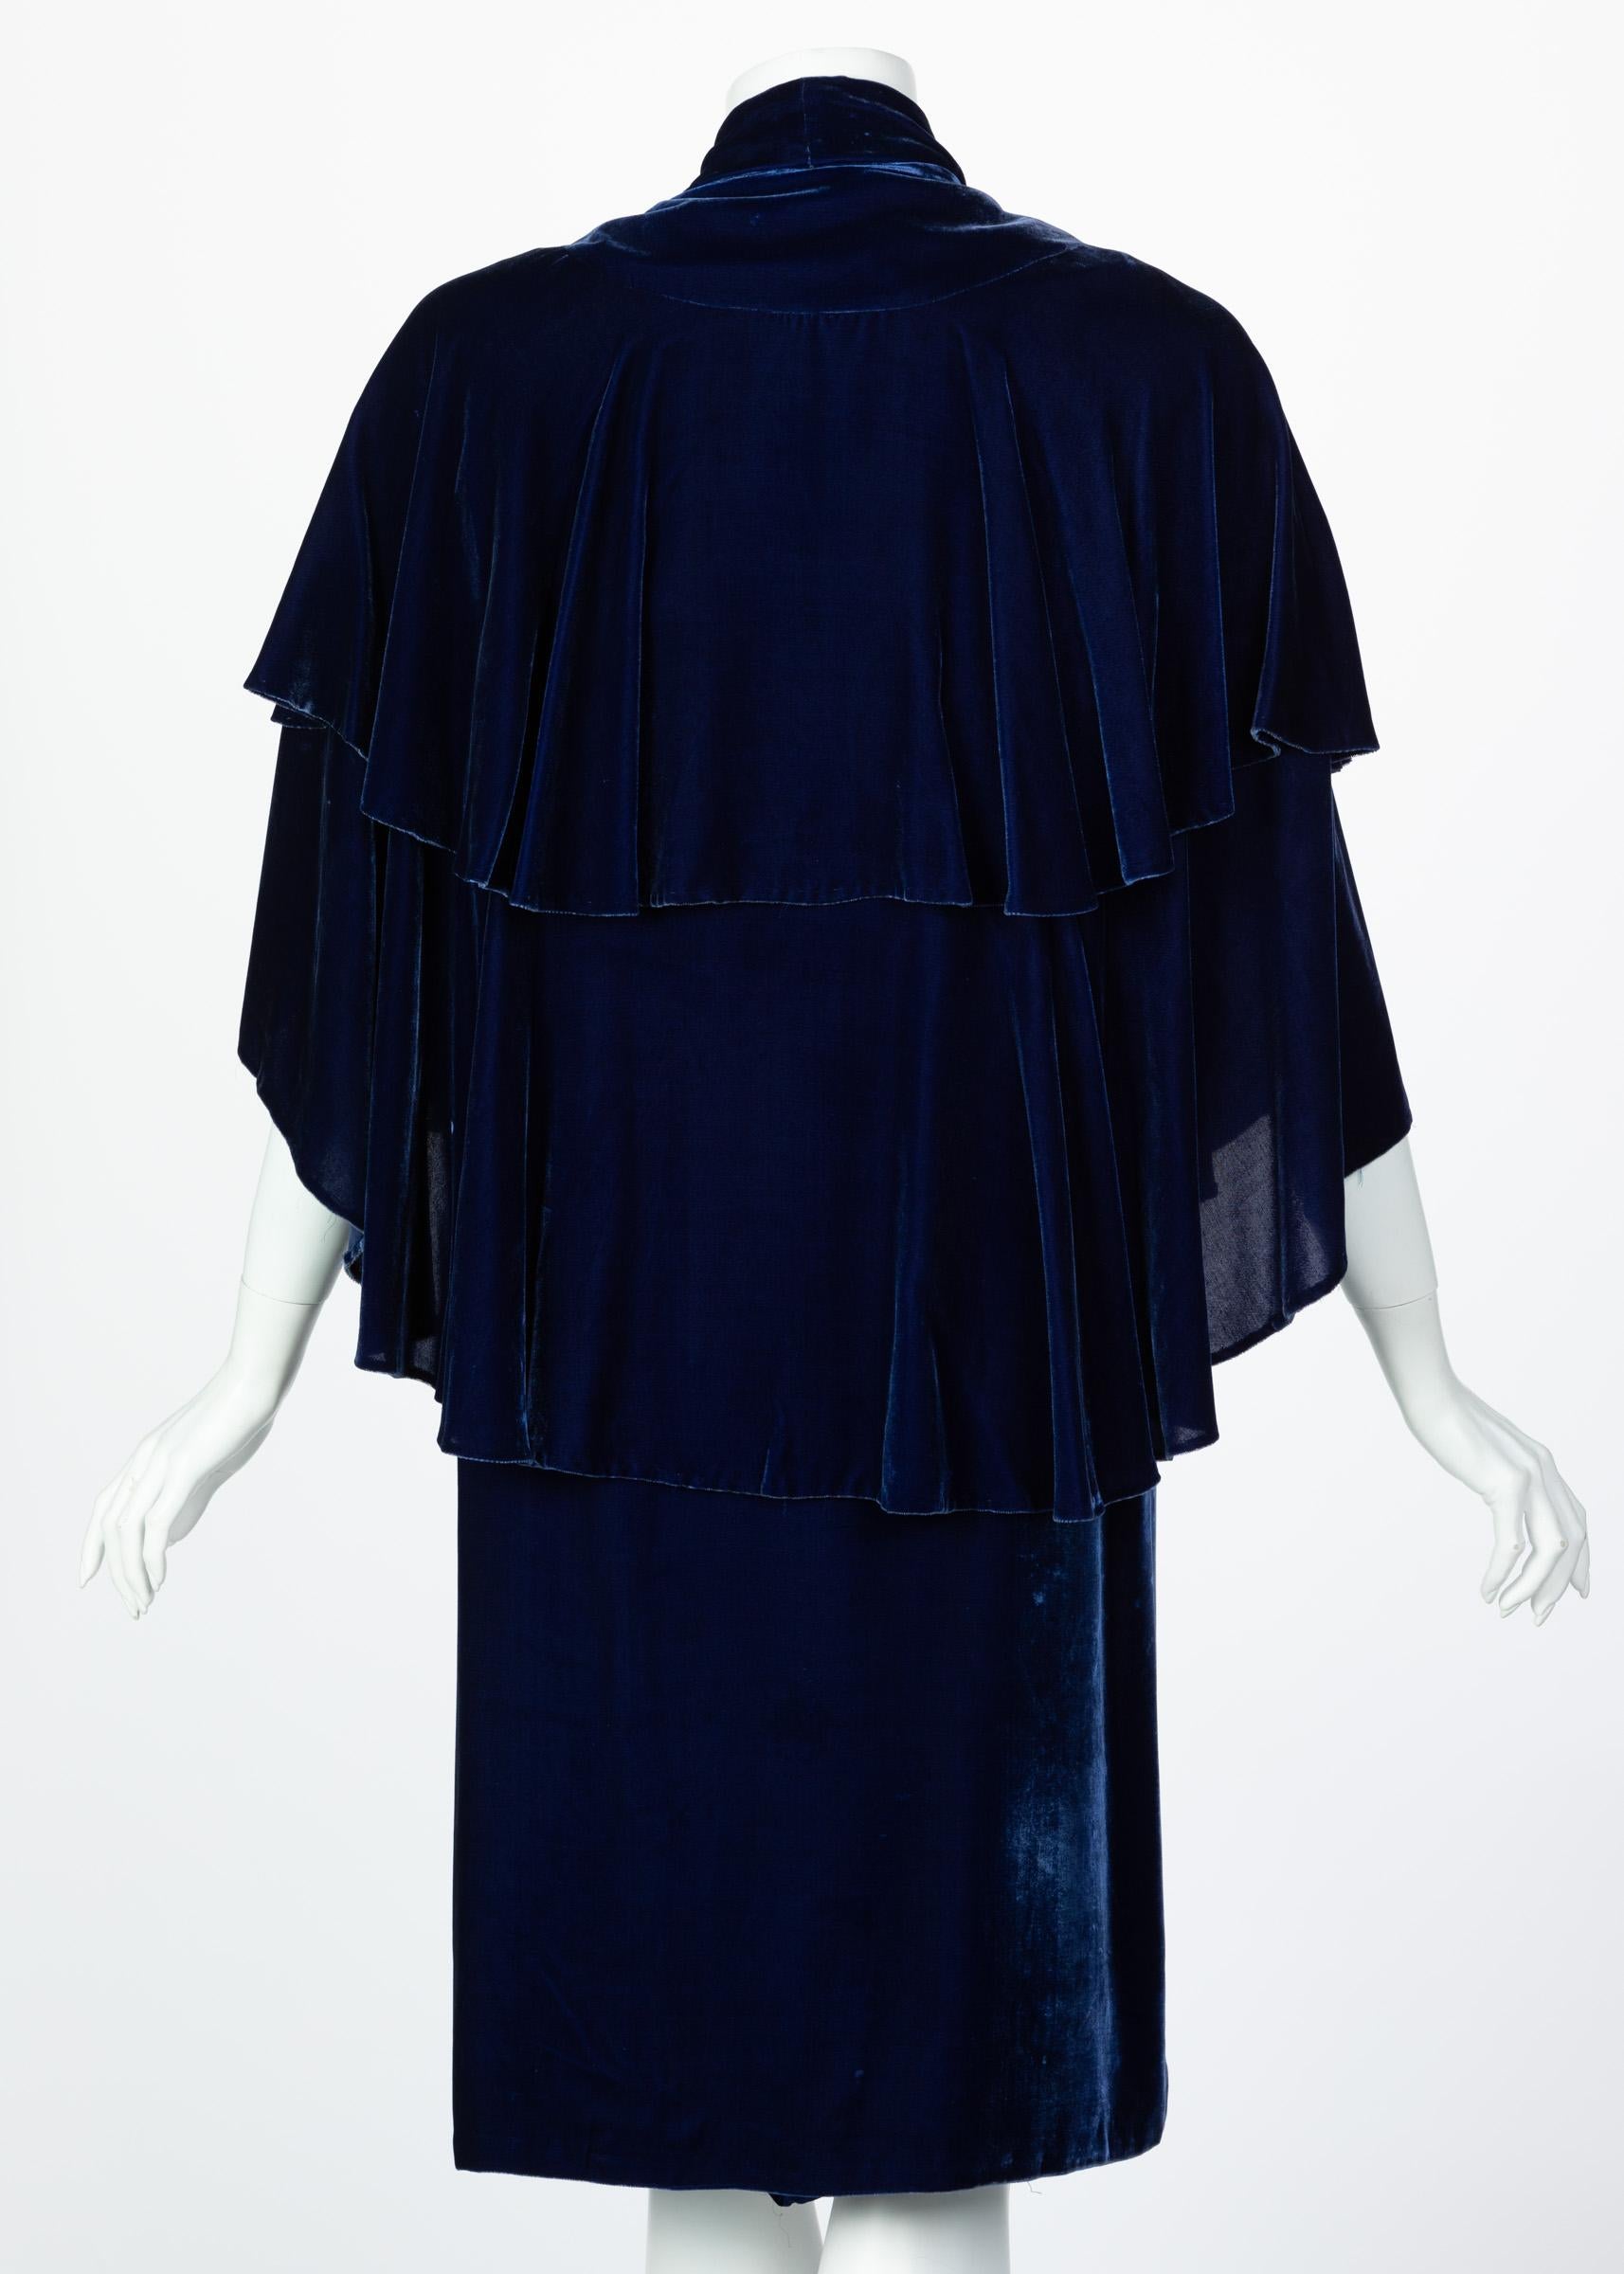 I Magnin & Co. Blue Silk velvet Evening Cape Coat, 1930s For Sale 2